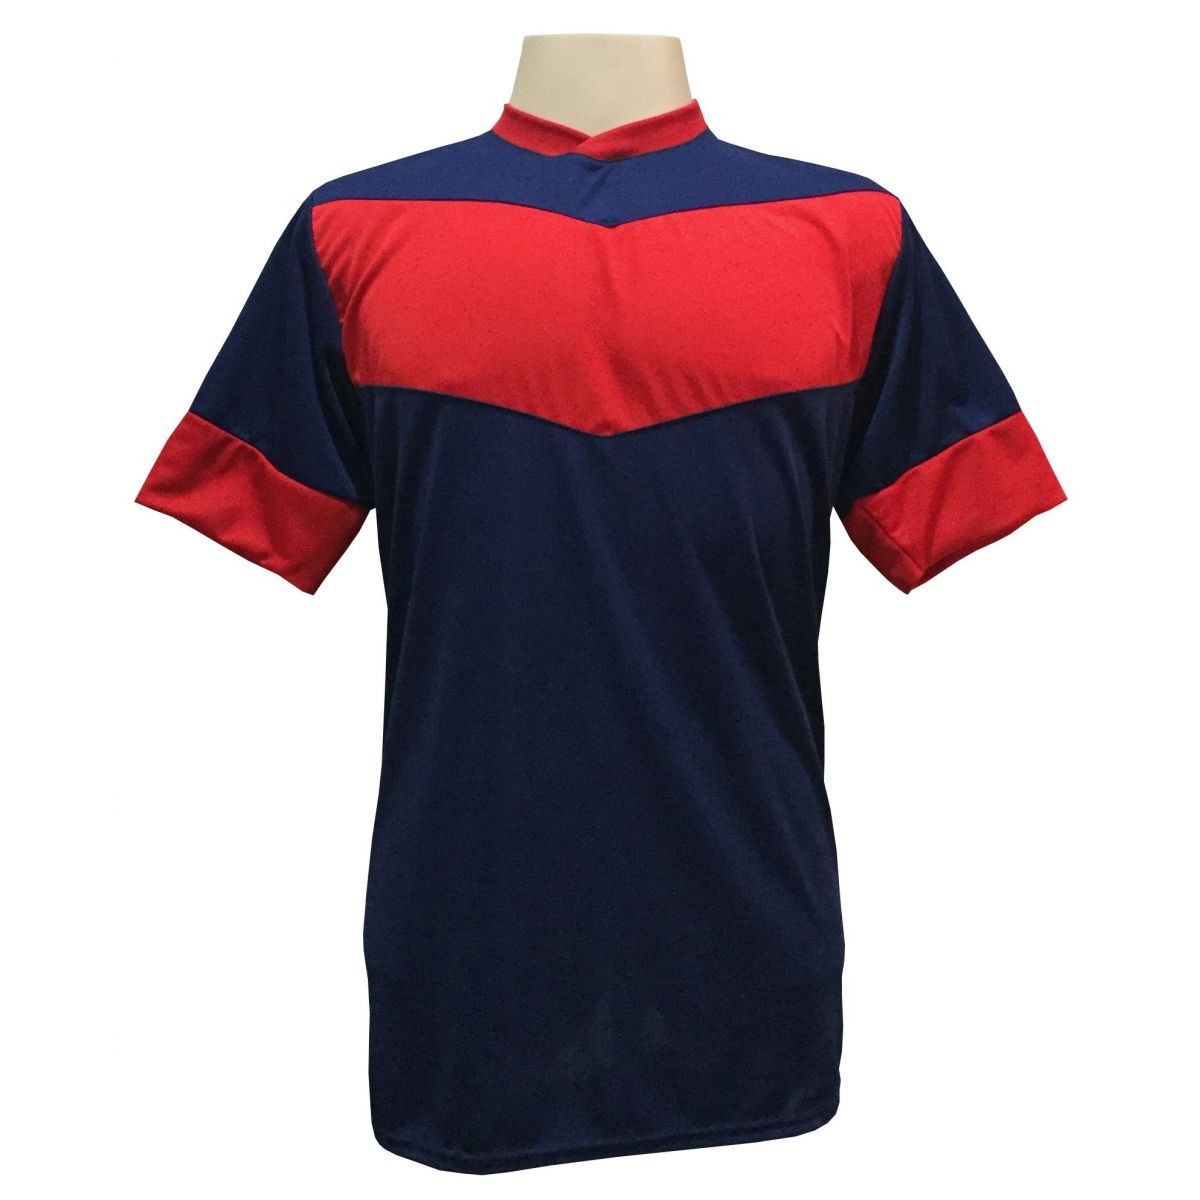 Uniforme Esportivo com 18 camisas modelo Columbus Marinho/Vermelho + 18 calções modelo Madrid Vermelho + Brindes